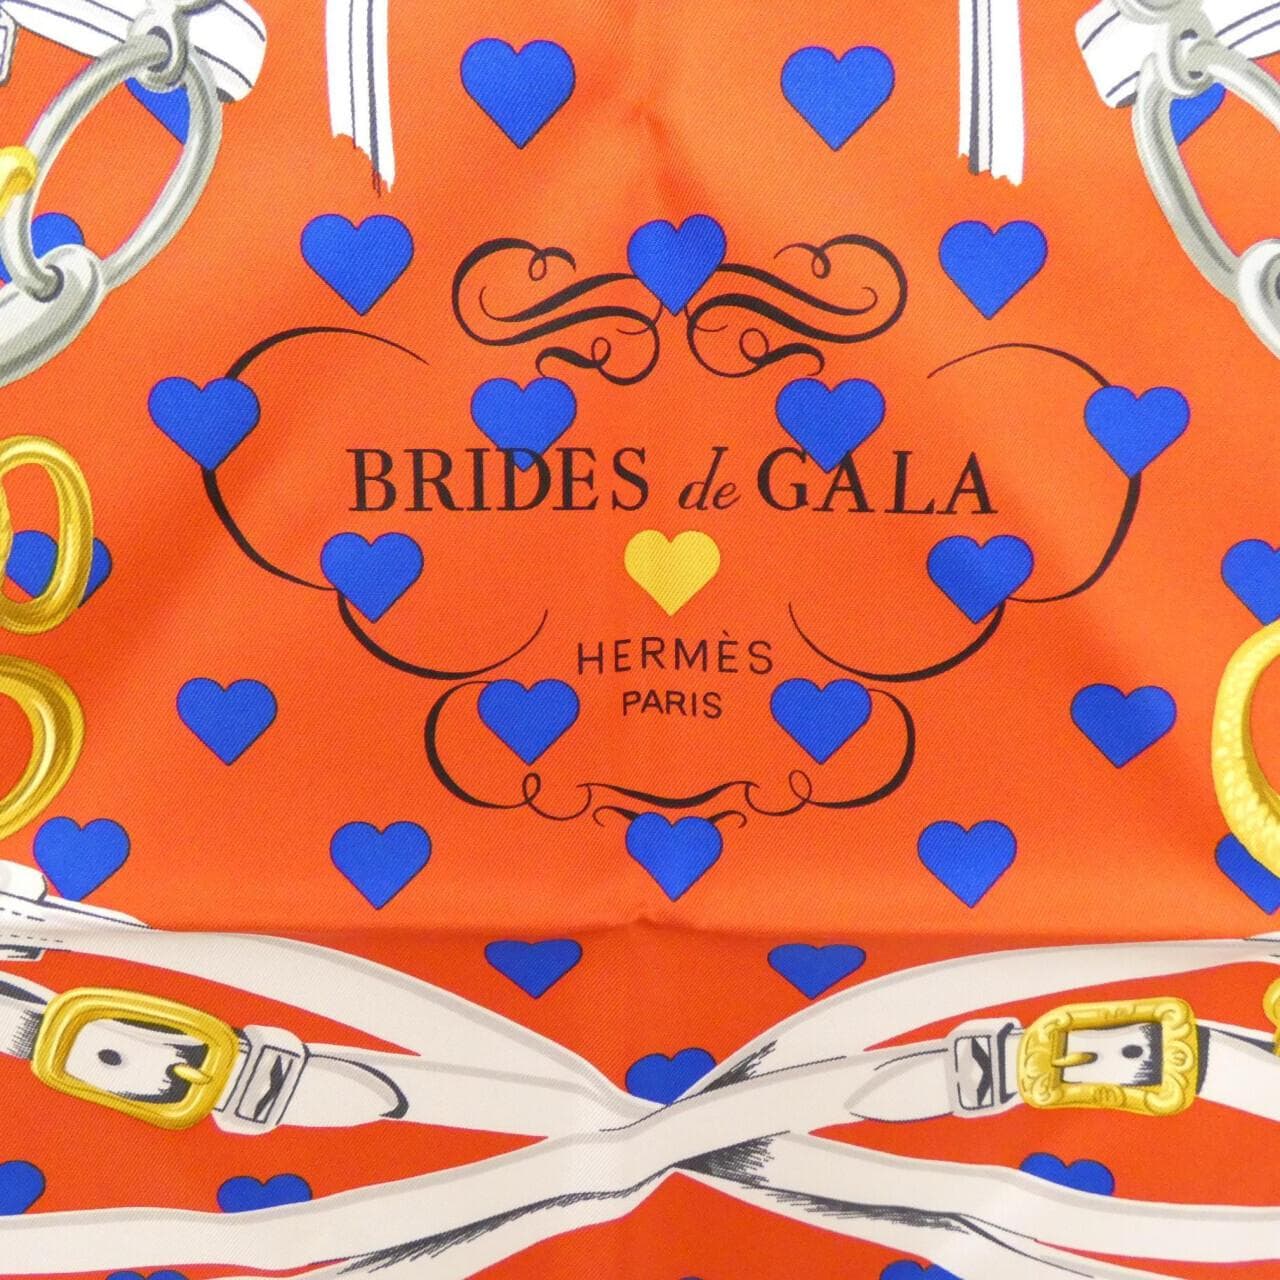 HERMES BRIDES DE GALA LOVE 男友款 90 厘米 003132S 围巾